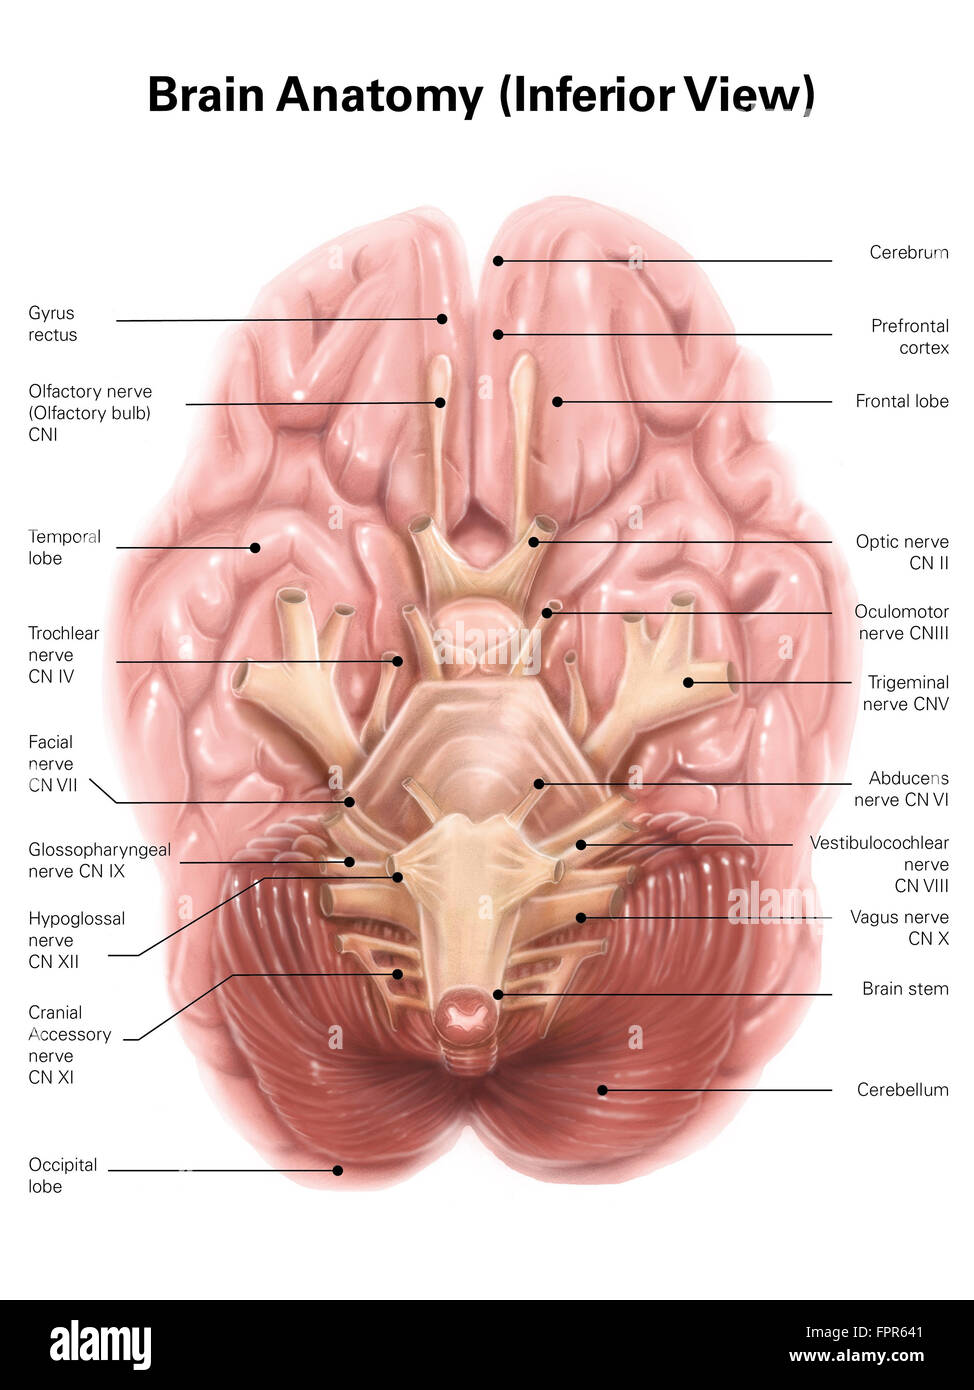 Anatomy of human brain, inferior view. Stock Photo